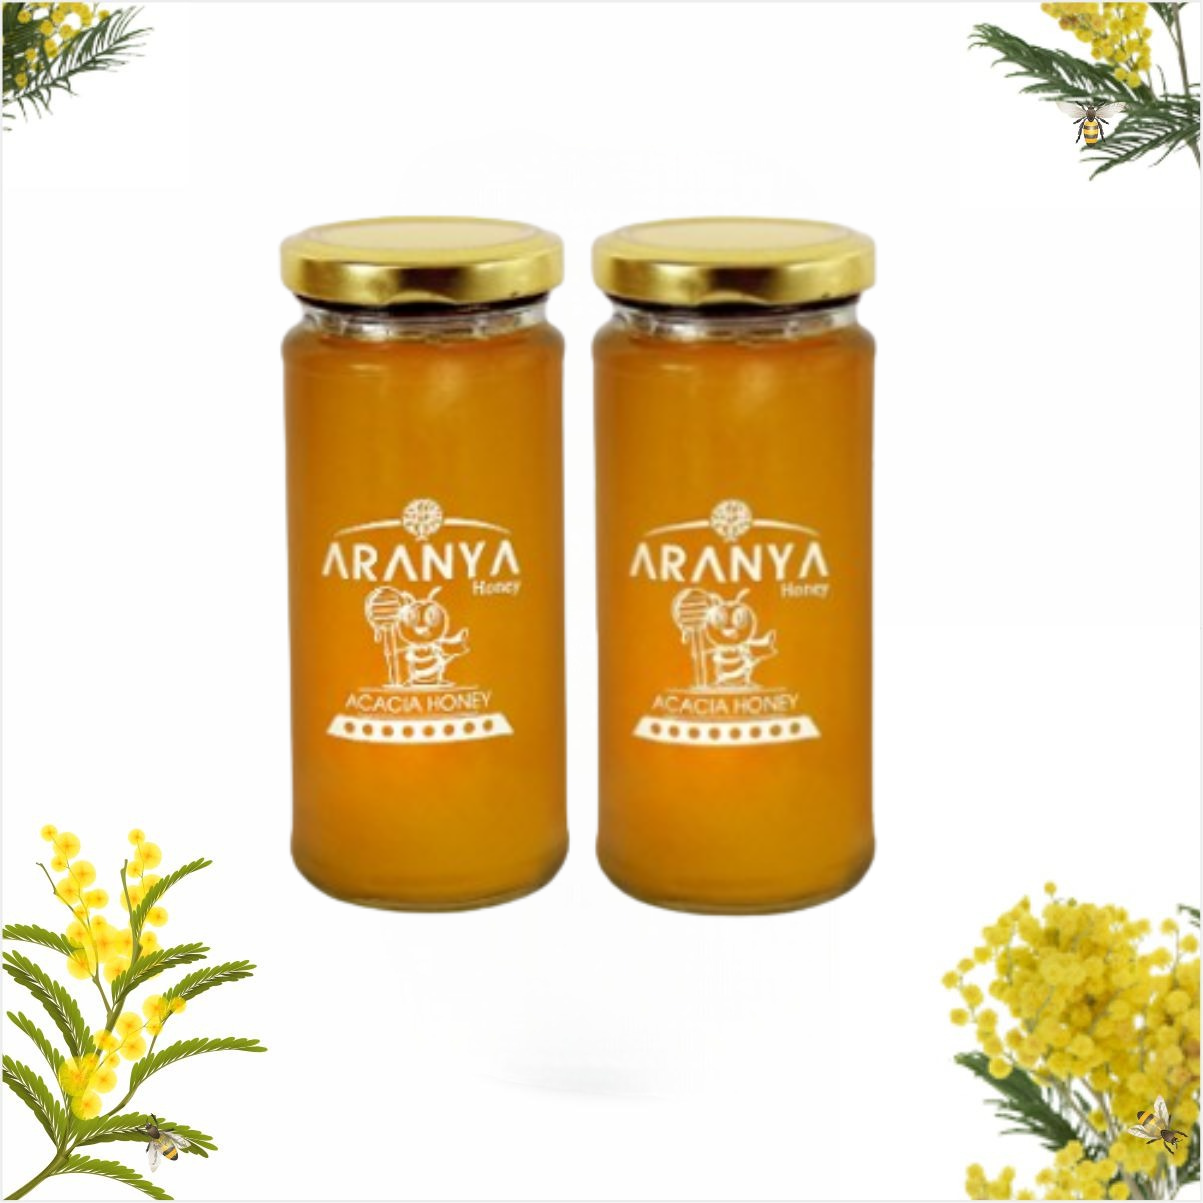 Aranya Acacia Honey